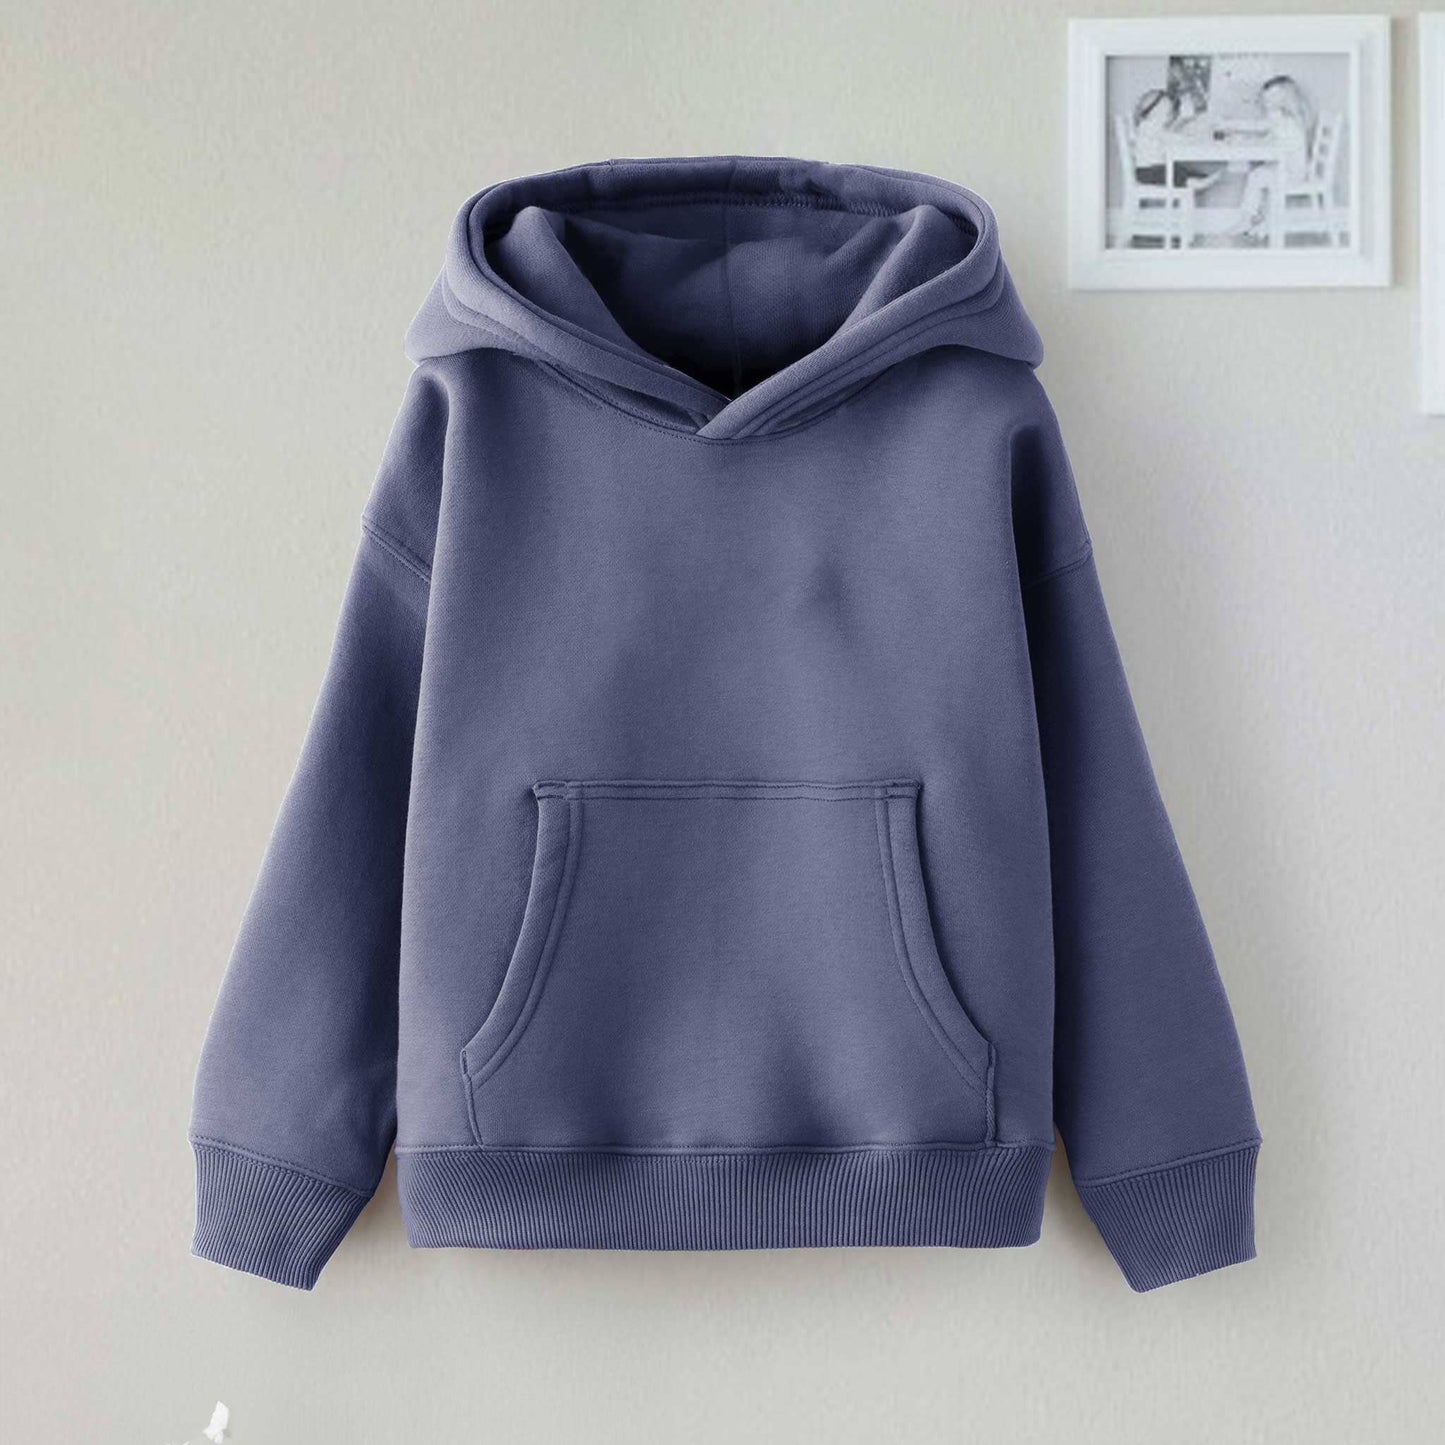 Dream Kid's Solid Design Long Sleeve Pullover Fleece Hoodie Boy's Pullover Hoodie Minhas Garments Light Navy 2-3 Years 